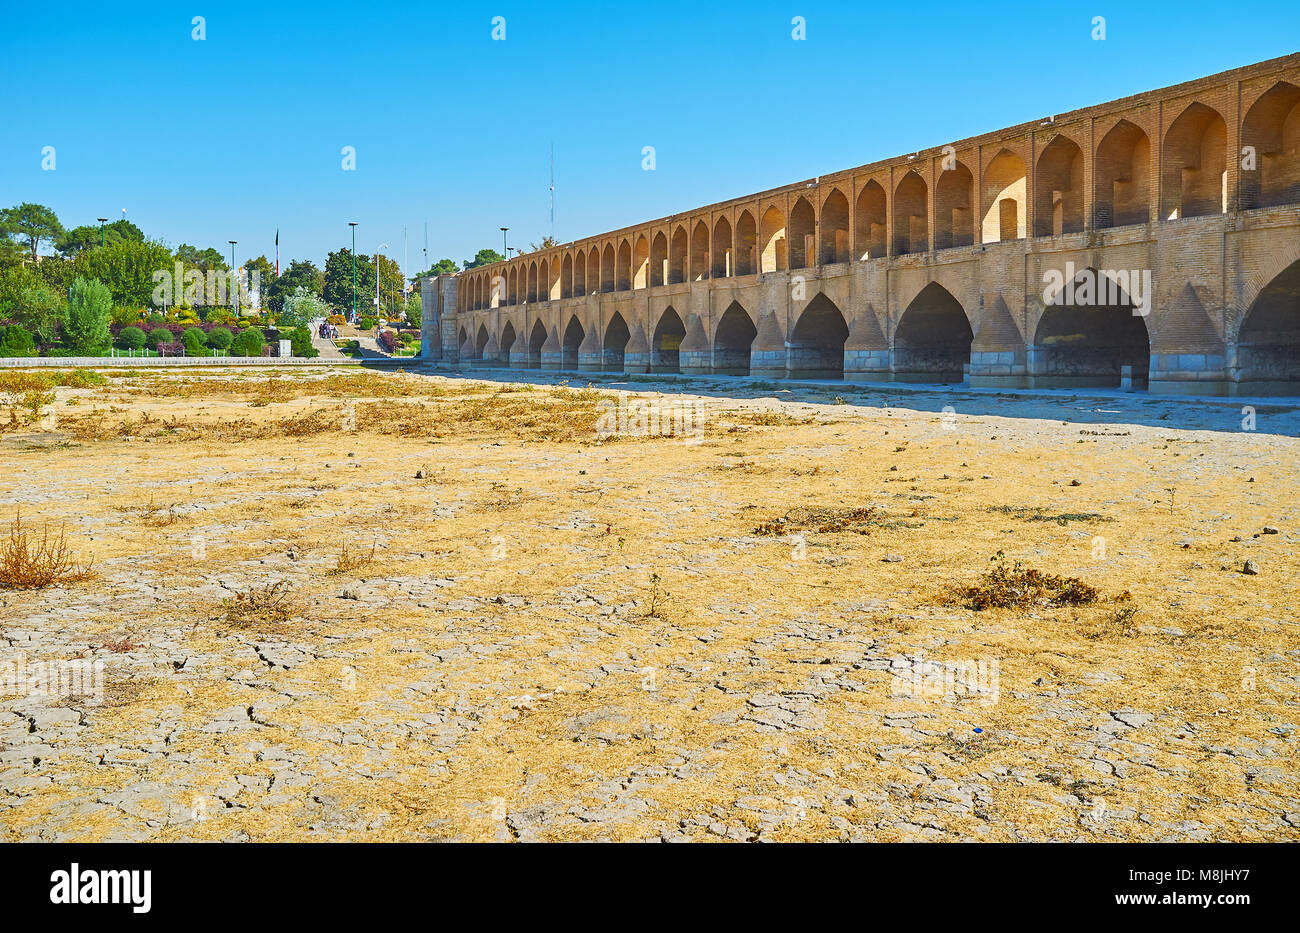 La pittoresque cité médiévale de Si-O-se-pont pol s'étend dans la rivière asséchée Zayanderud, Isfahan, Iran. Banque D'Images